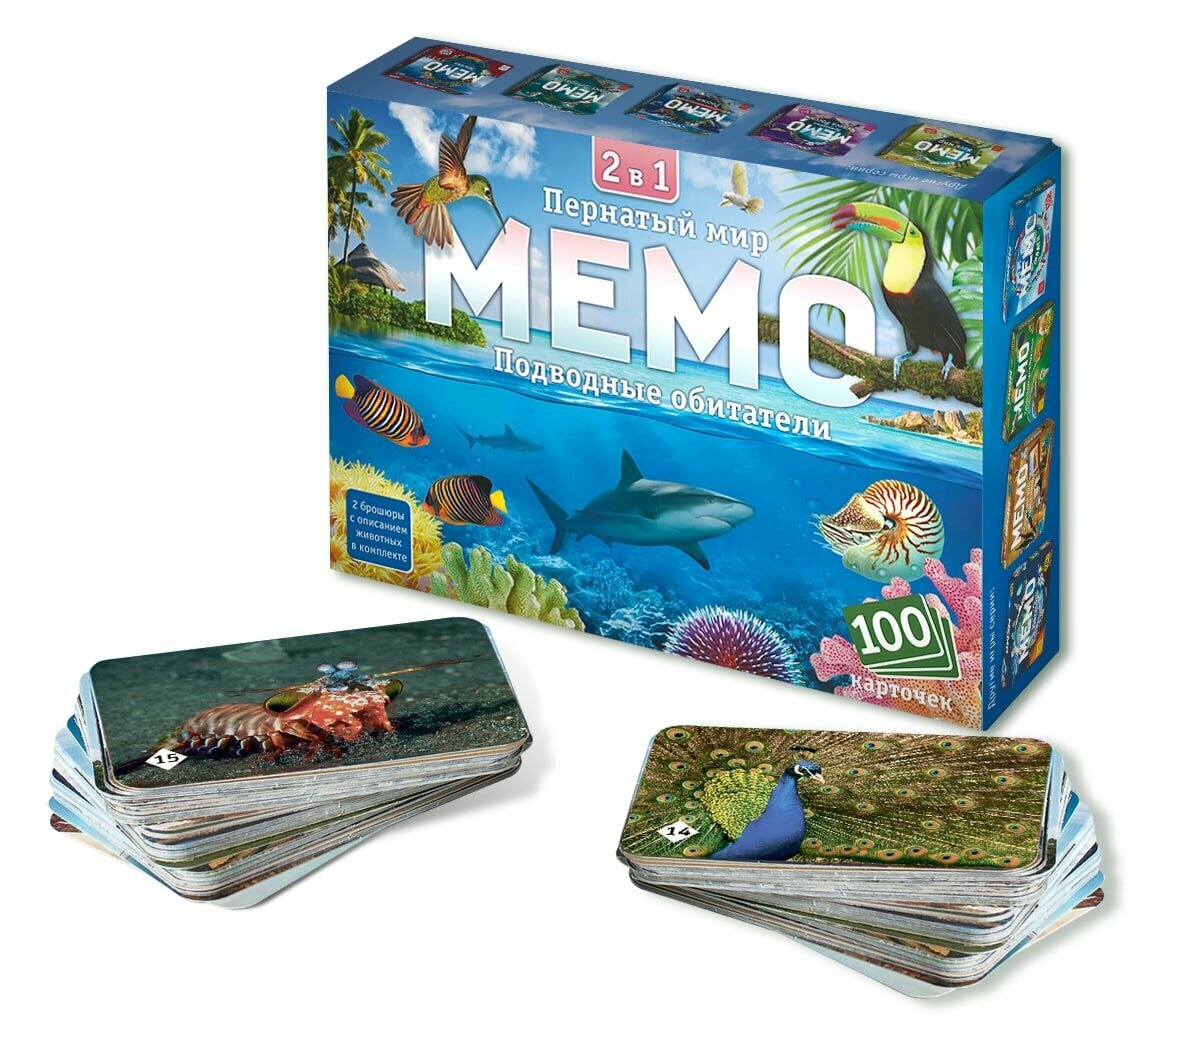 Нескучные игры Мемо 2 в 1 "Пернатый мир и Подводные обитатели" (100 карточек)